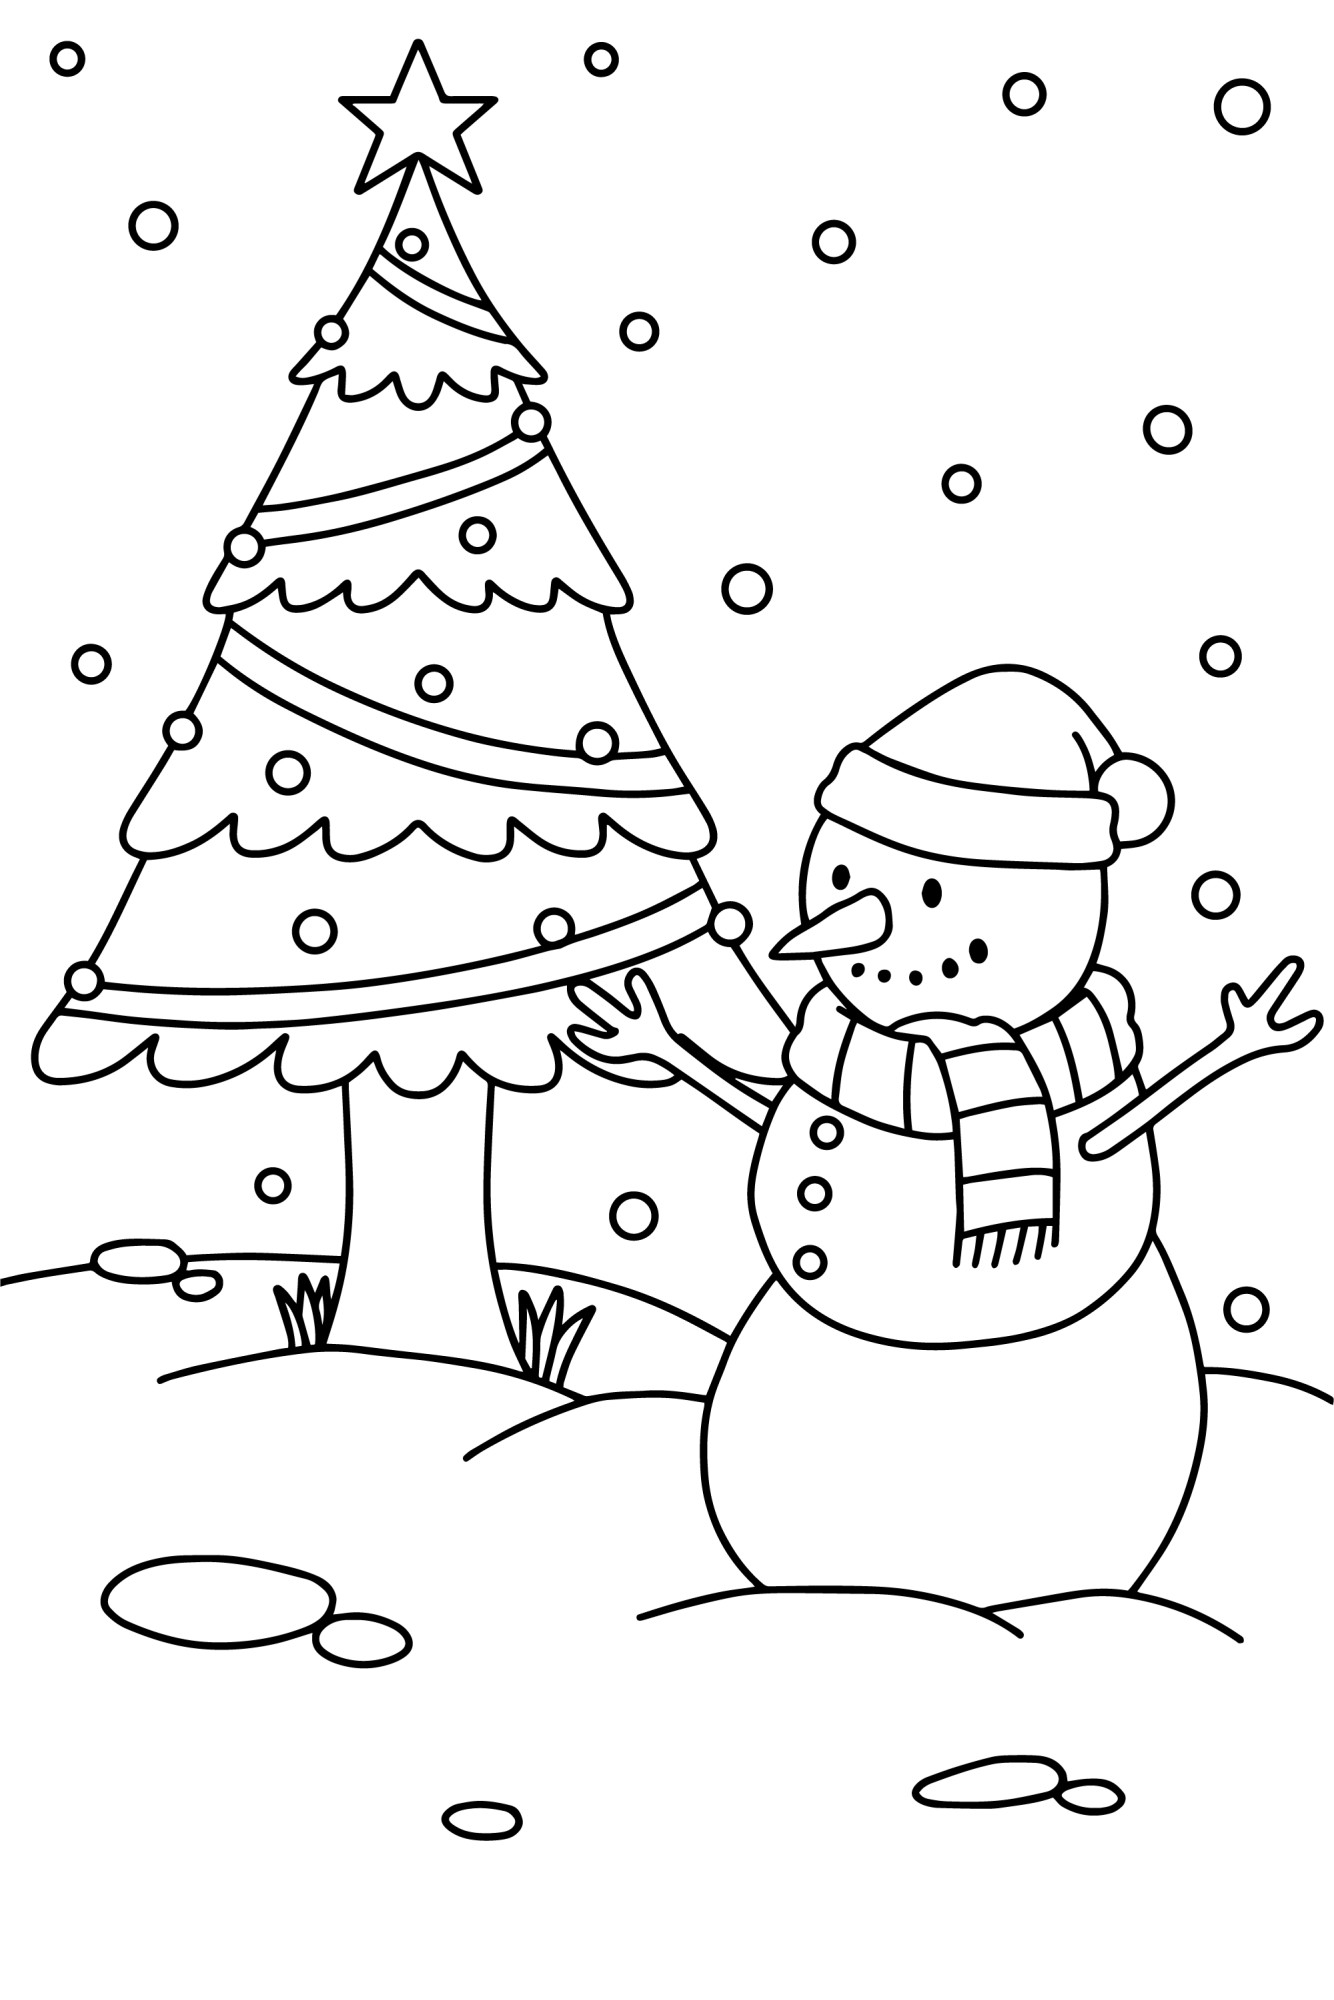 Раскраска для детей: новогодняя ёлка и снеговик в шапке с шарфом